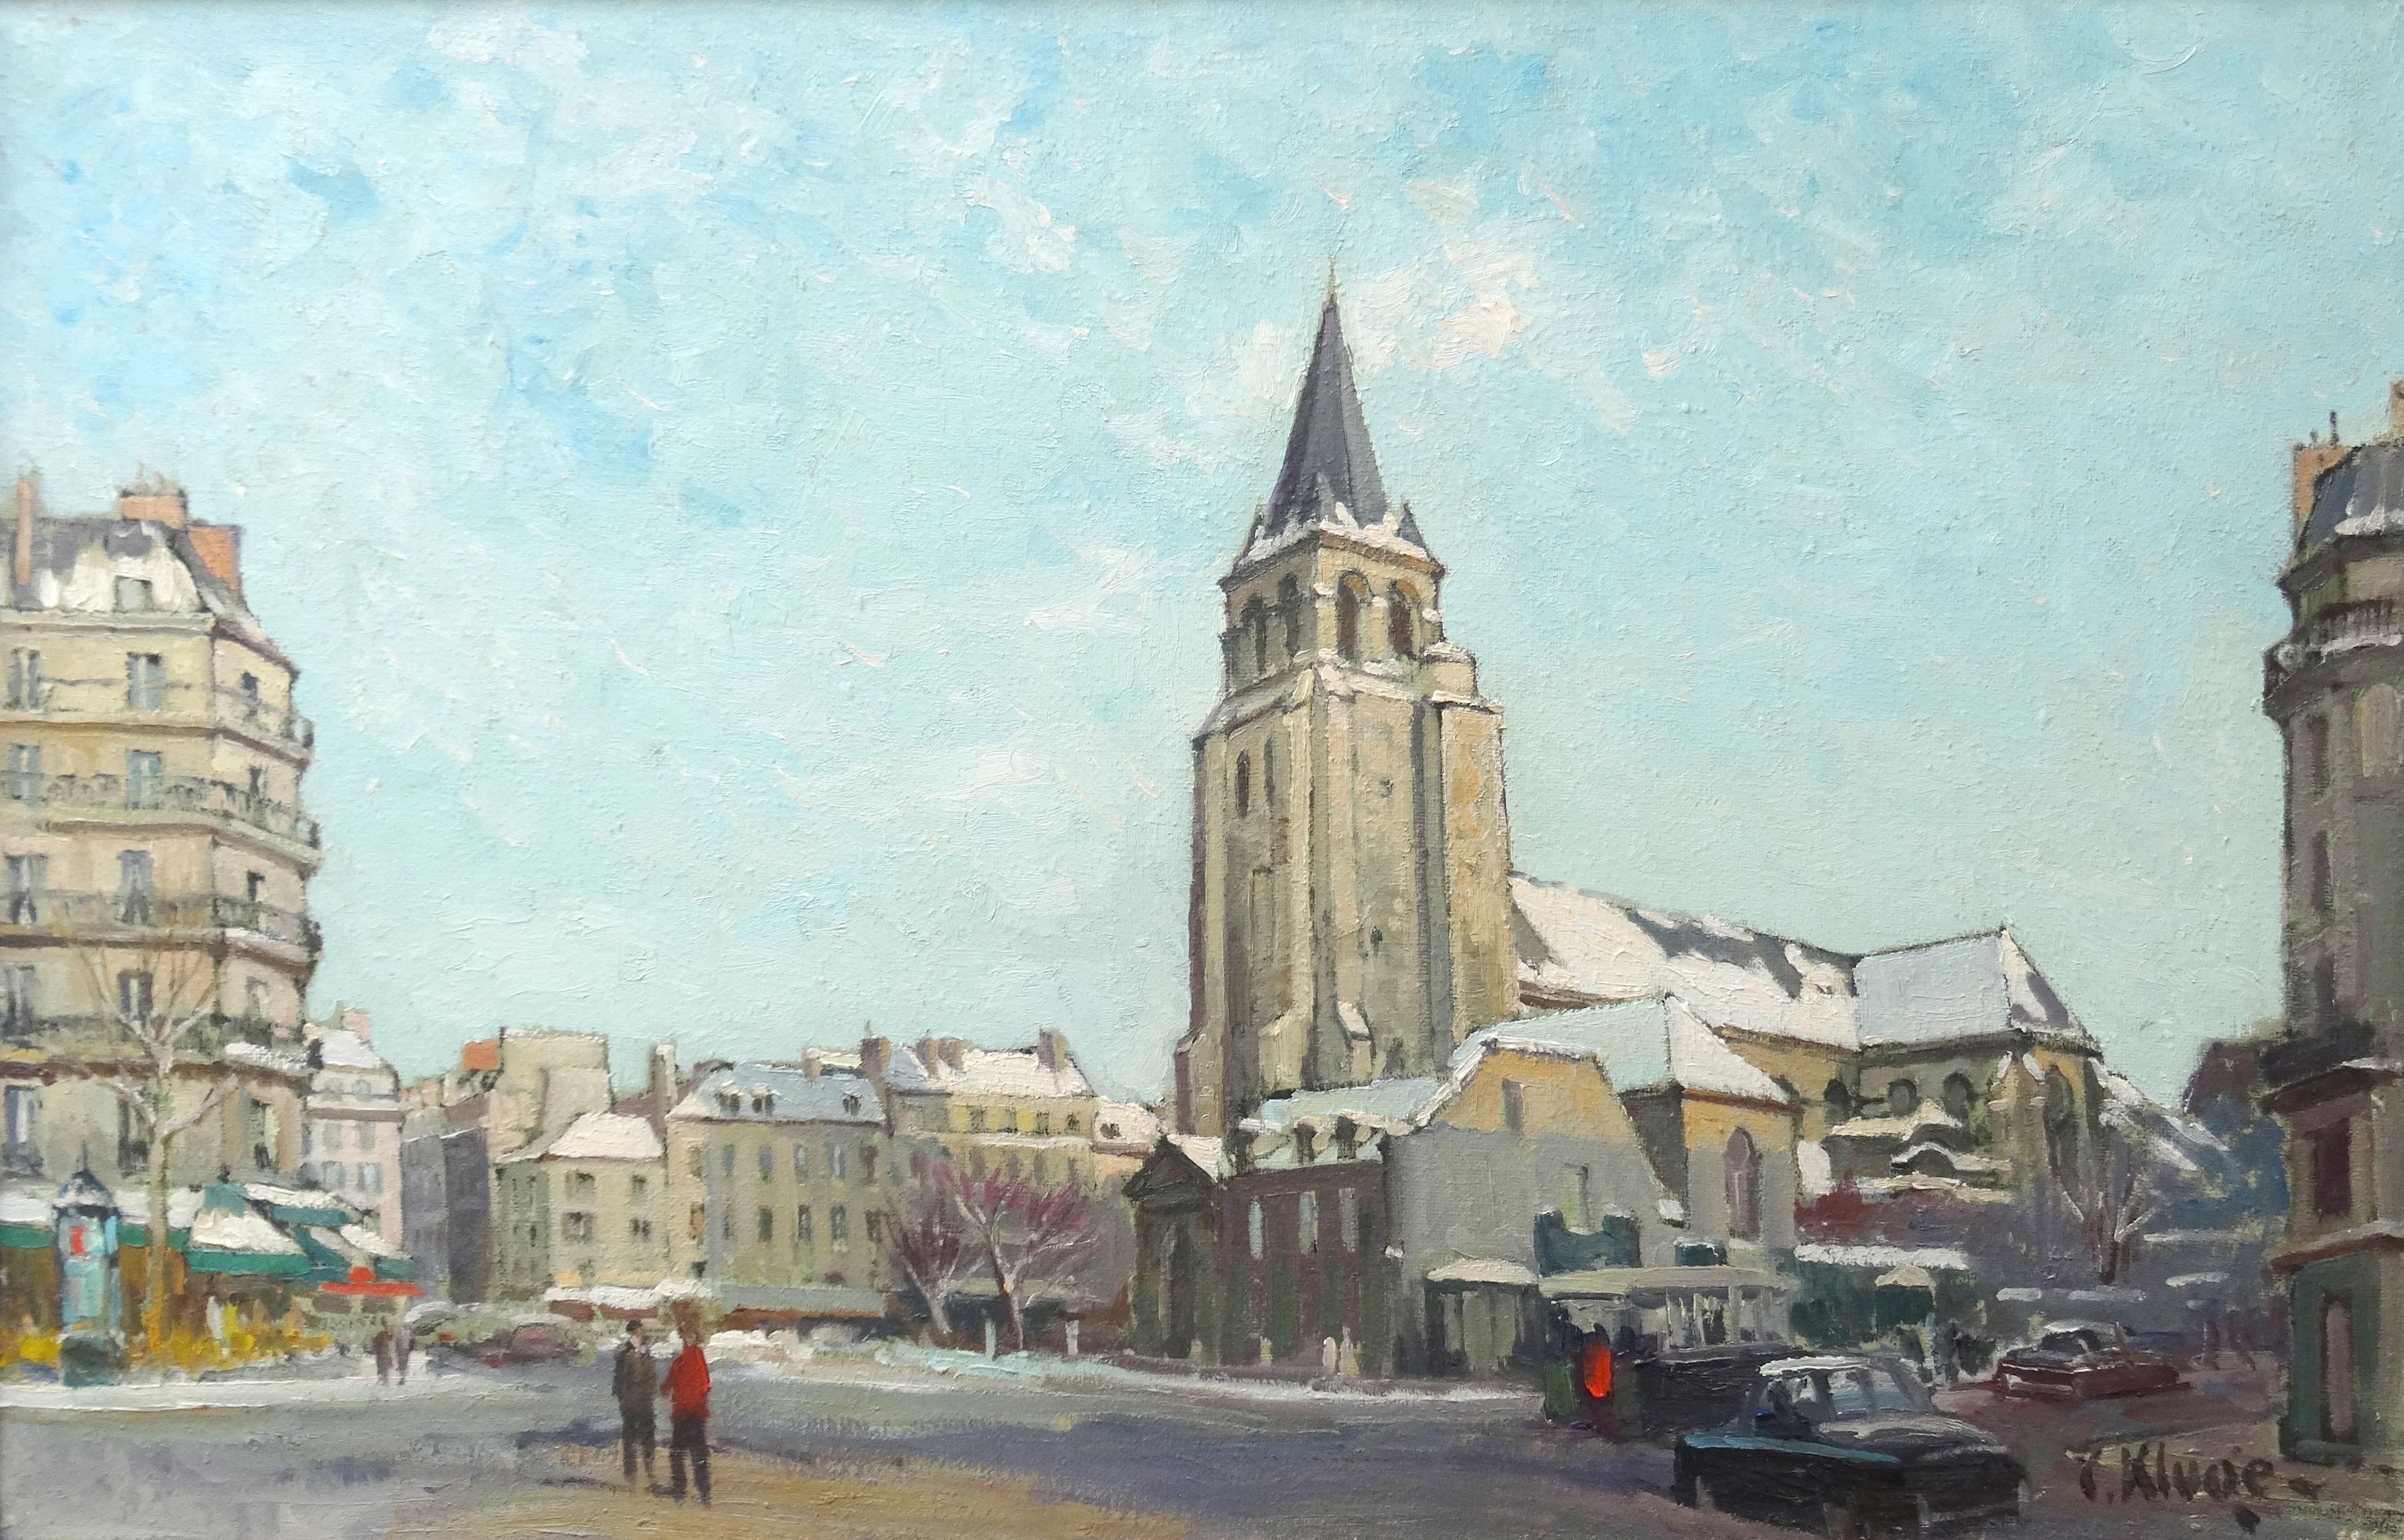 Saint Germain-des-Prés under the snow. Oil on canvas, 60x92 cm